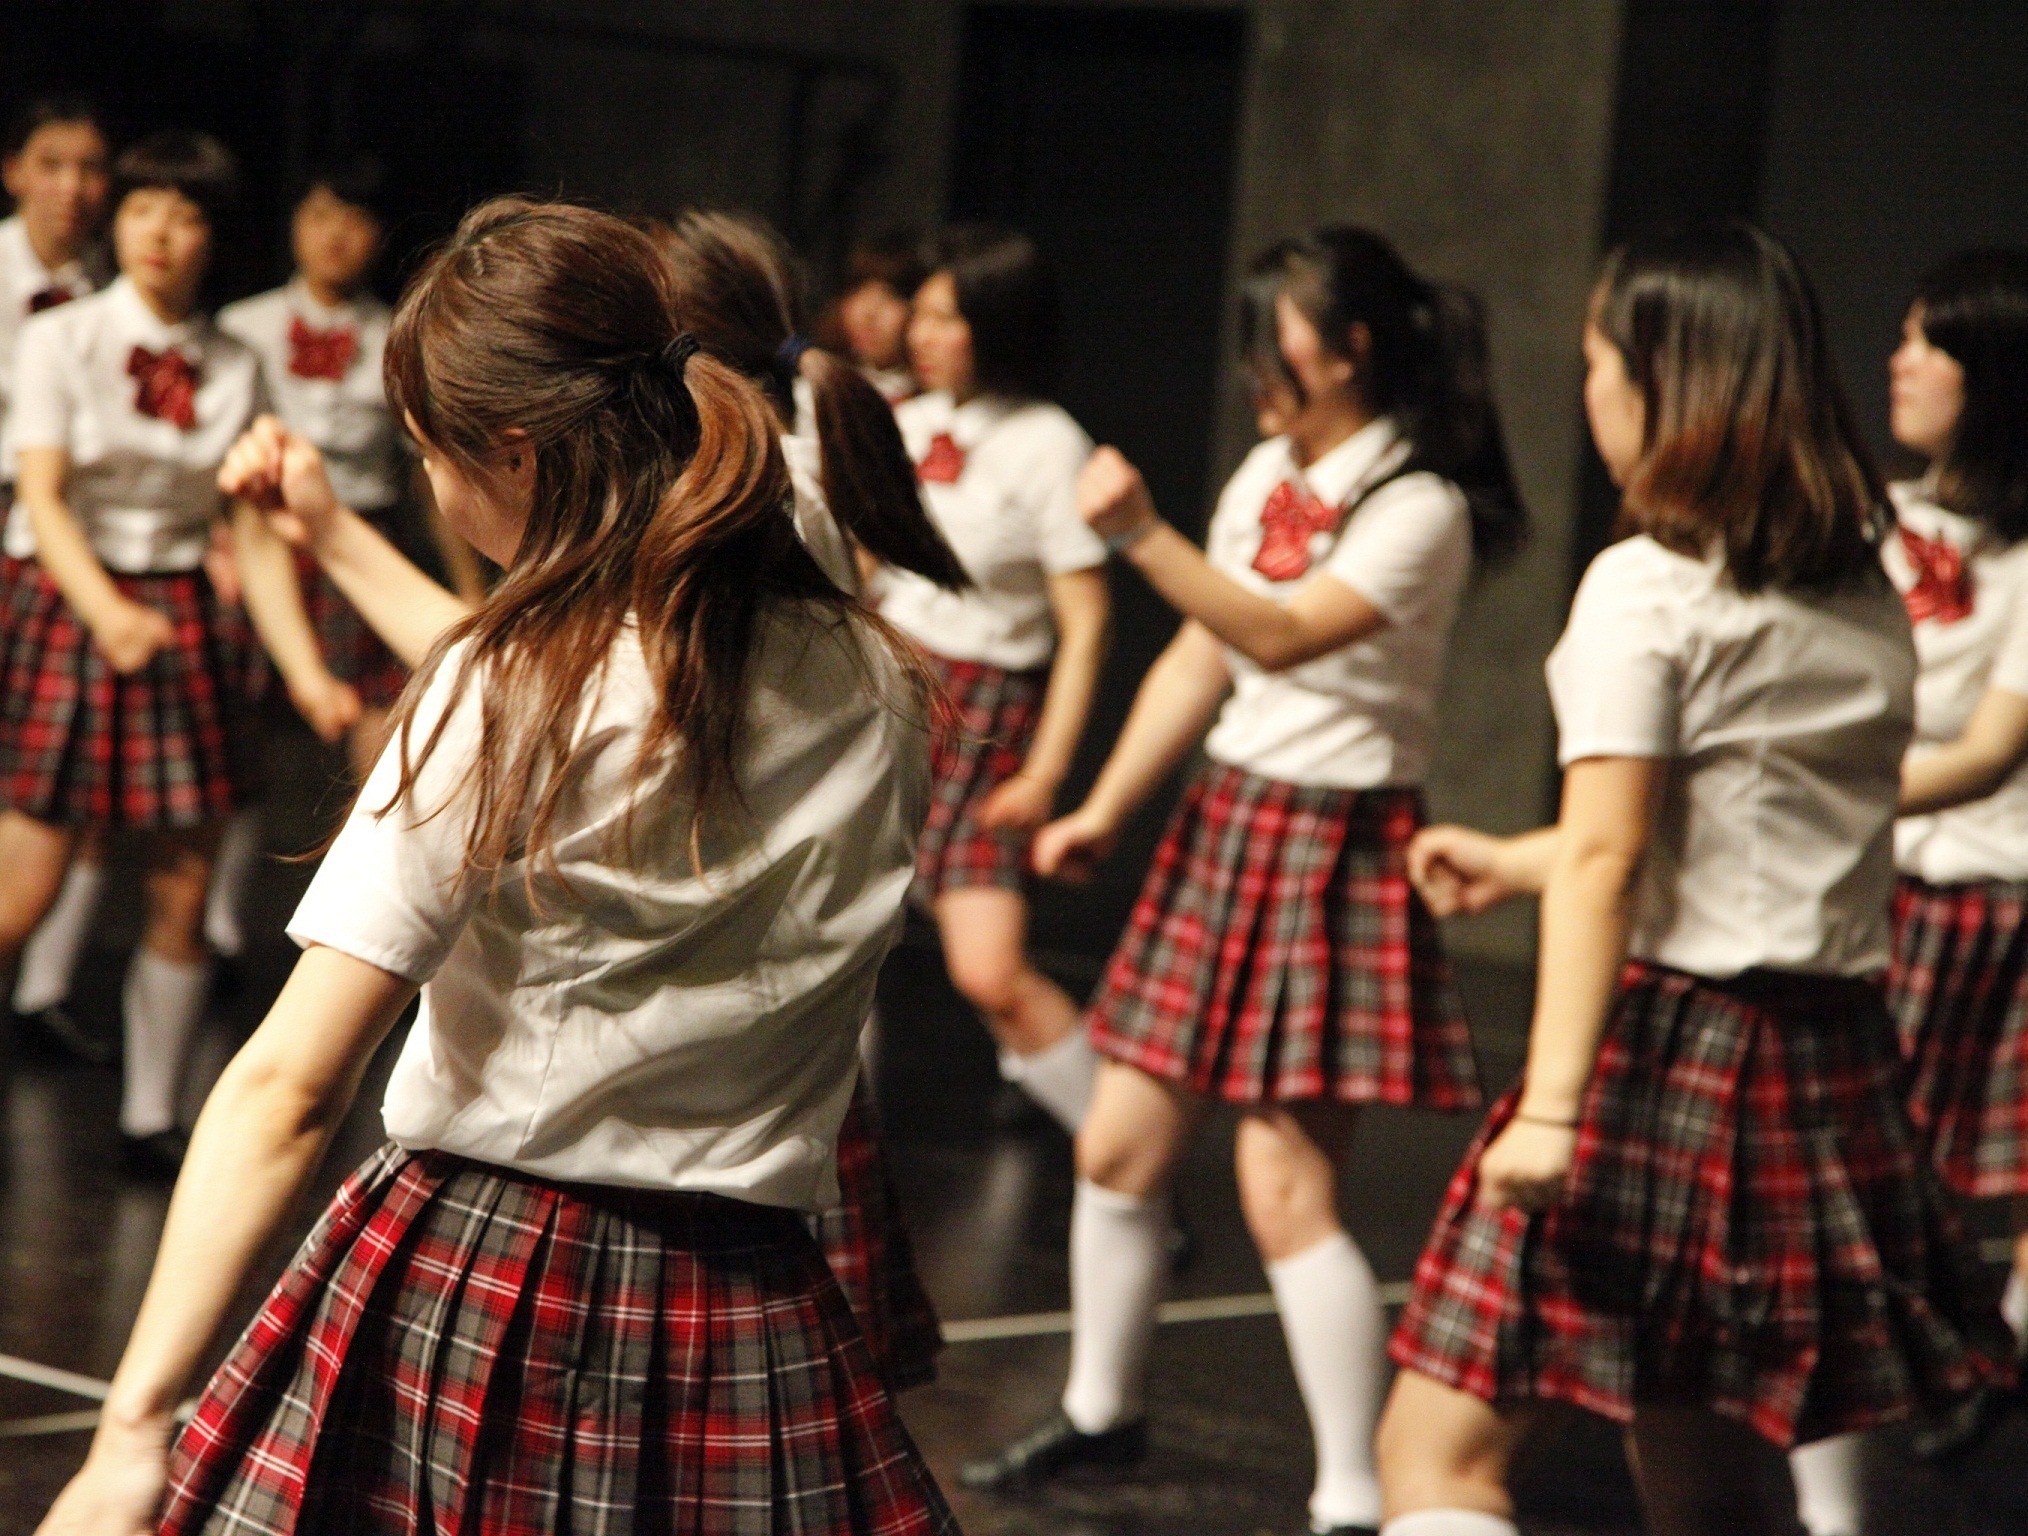 ウィリアム フォーサイス作品を活用したオンデマンドダンス教材作成を開始 日本女子体育大学 ダンス プロデュース研究部のプレスリリース